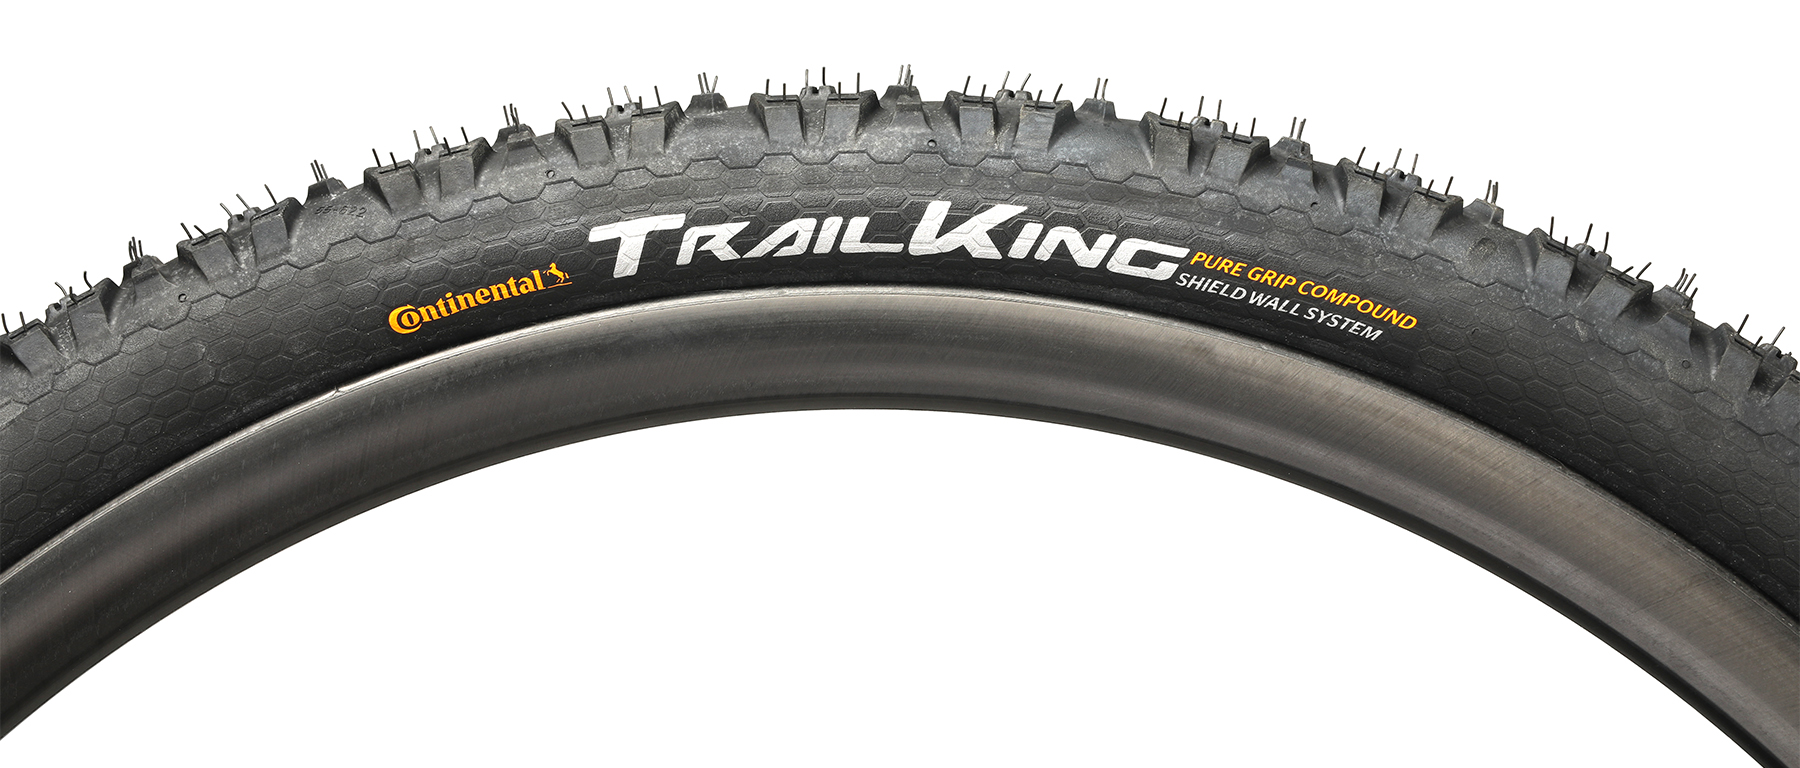 Continental Trail King Shieldwall Tire